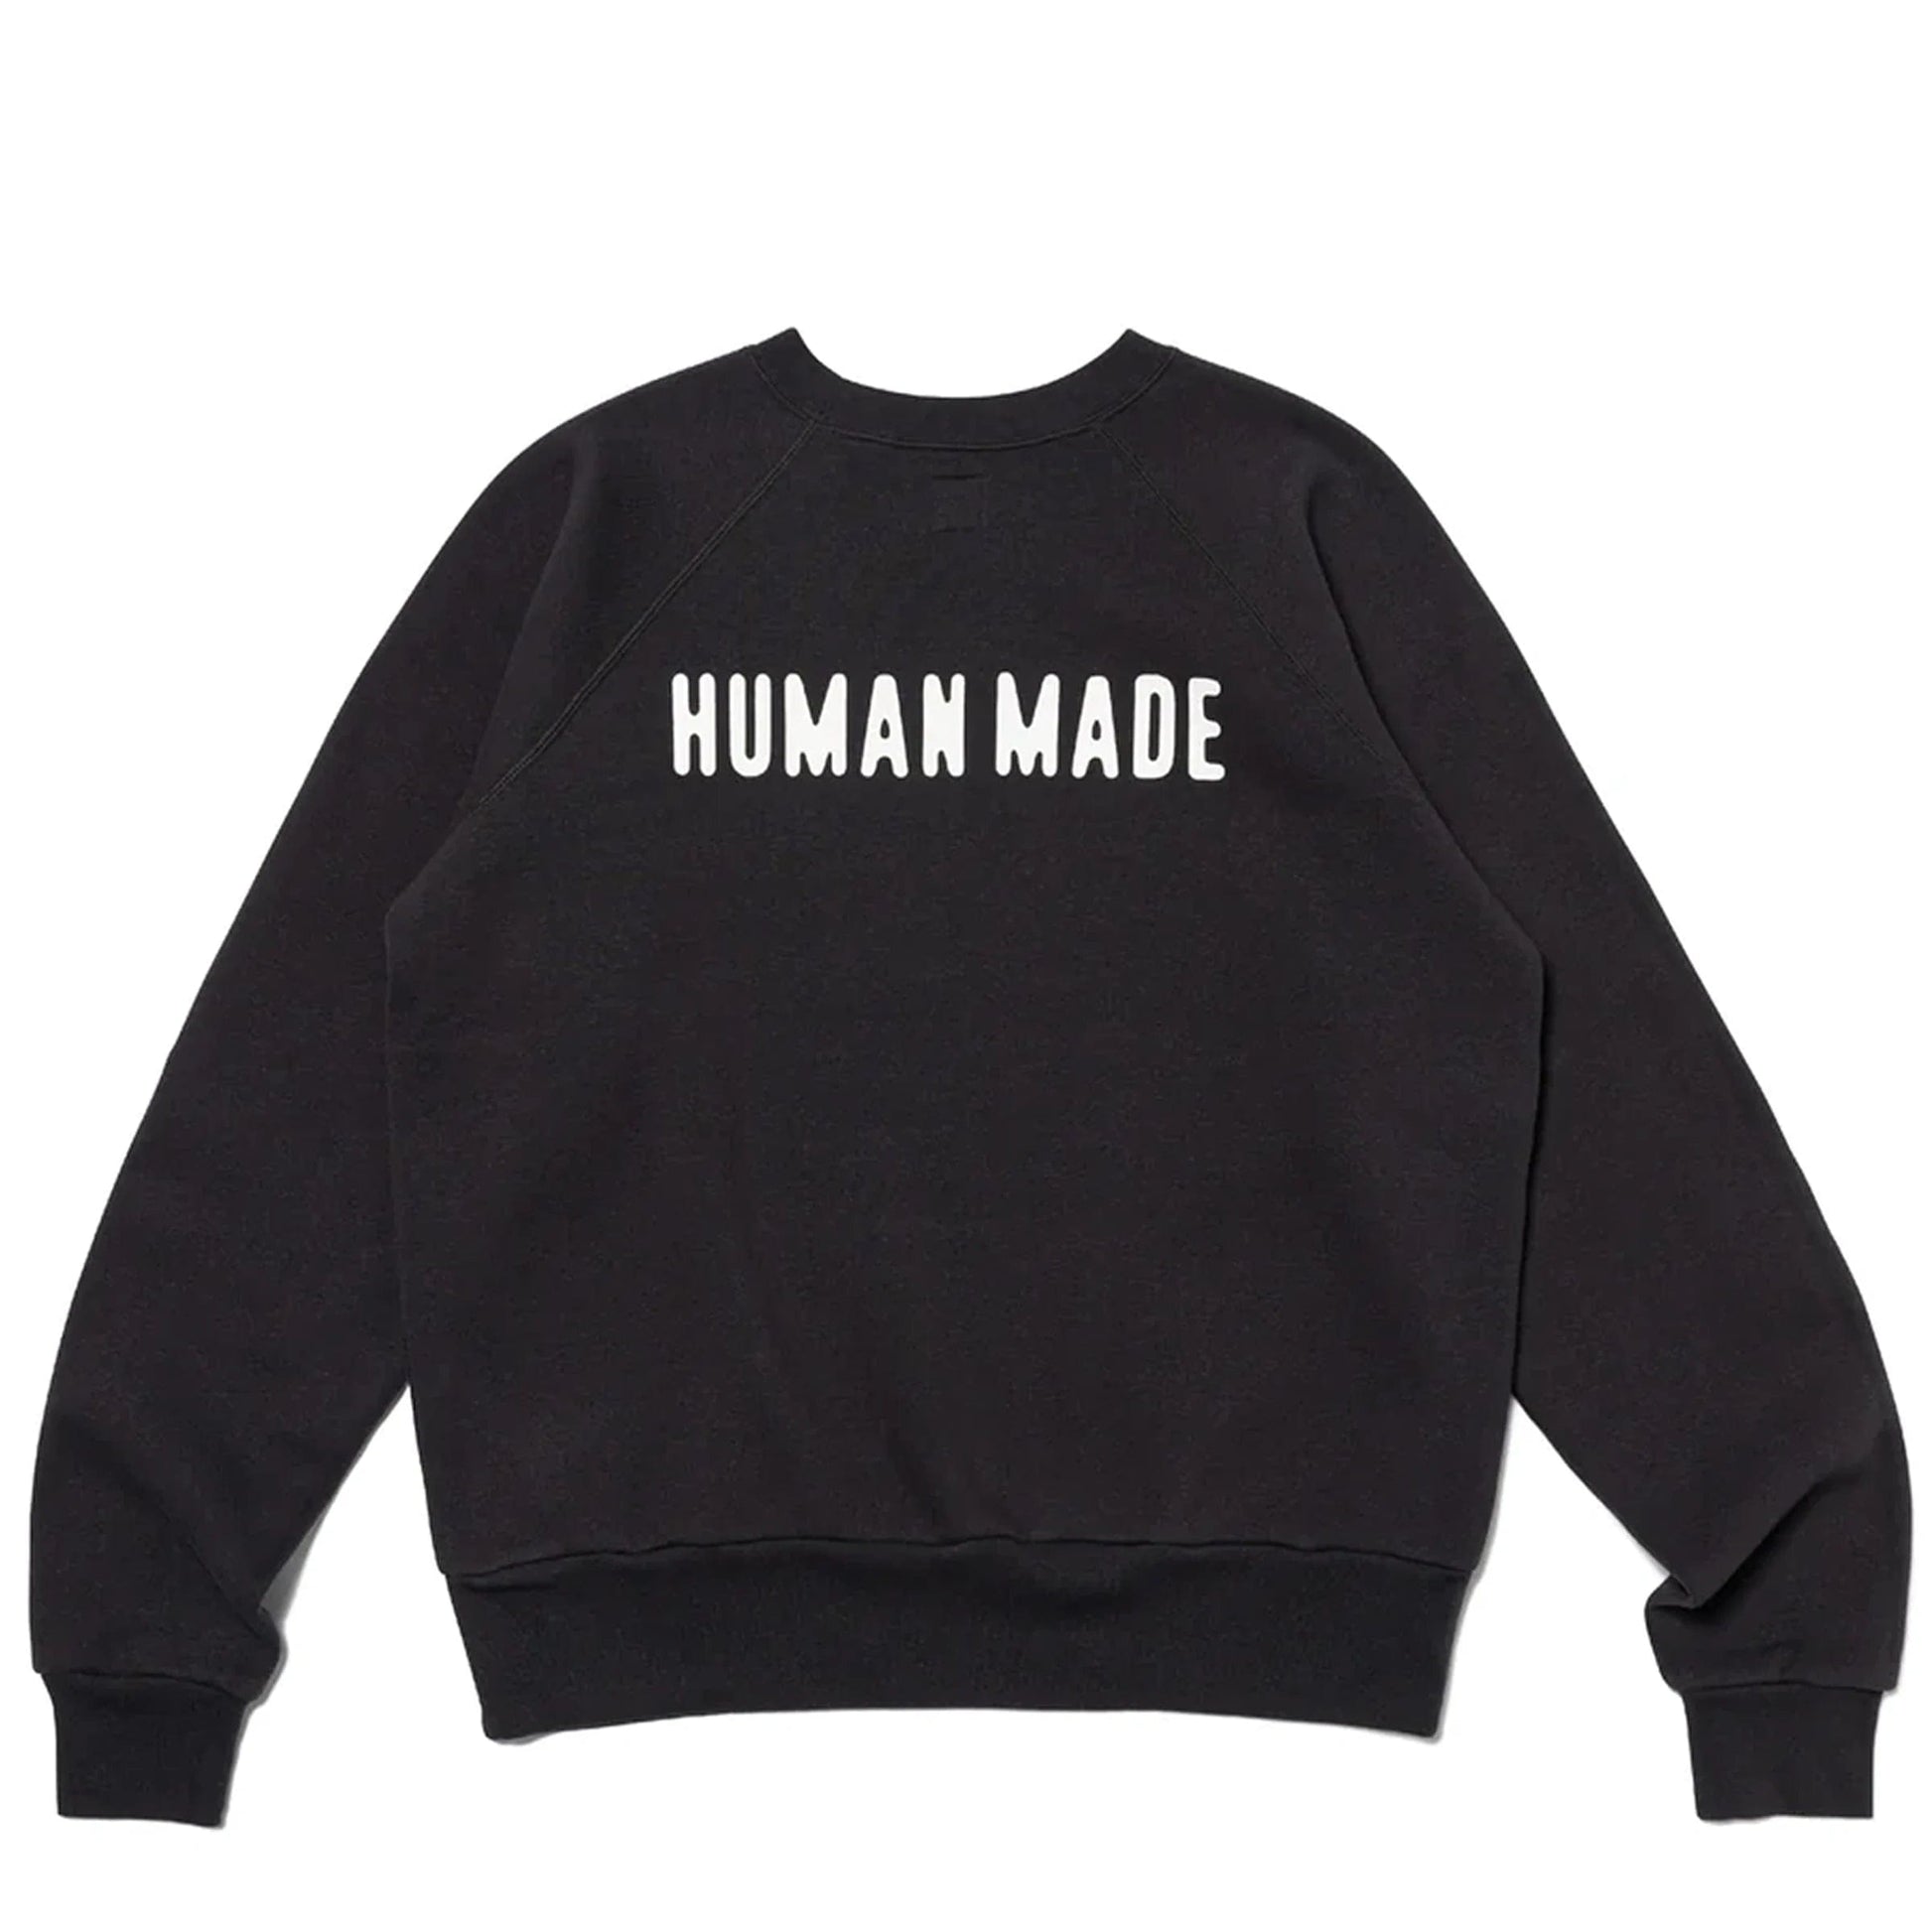 Human Made Hoodies & Sweatshirts HEART SWEATSHIRT